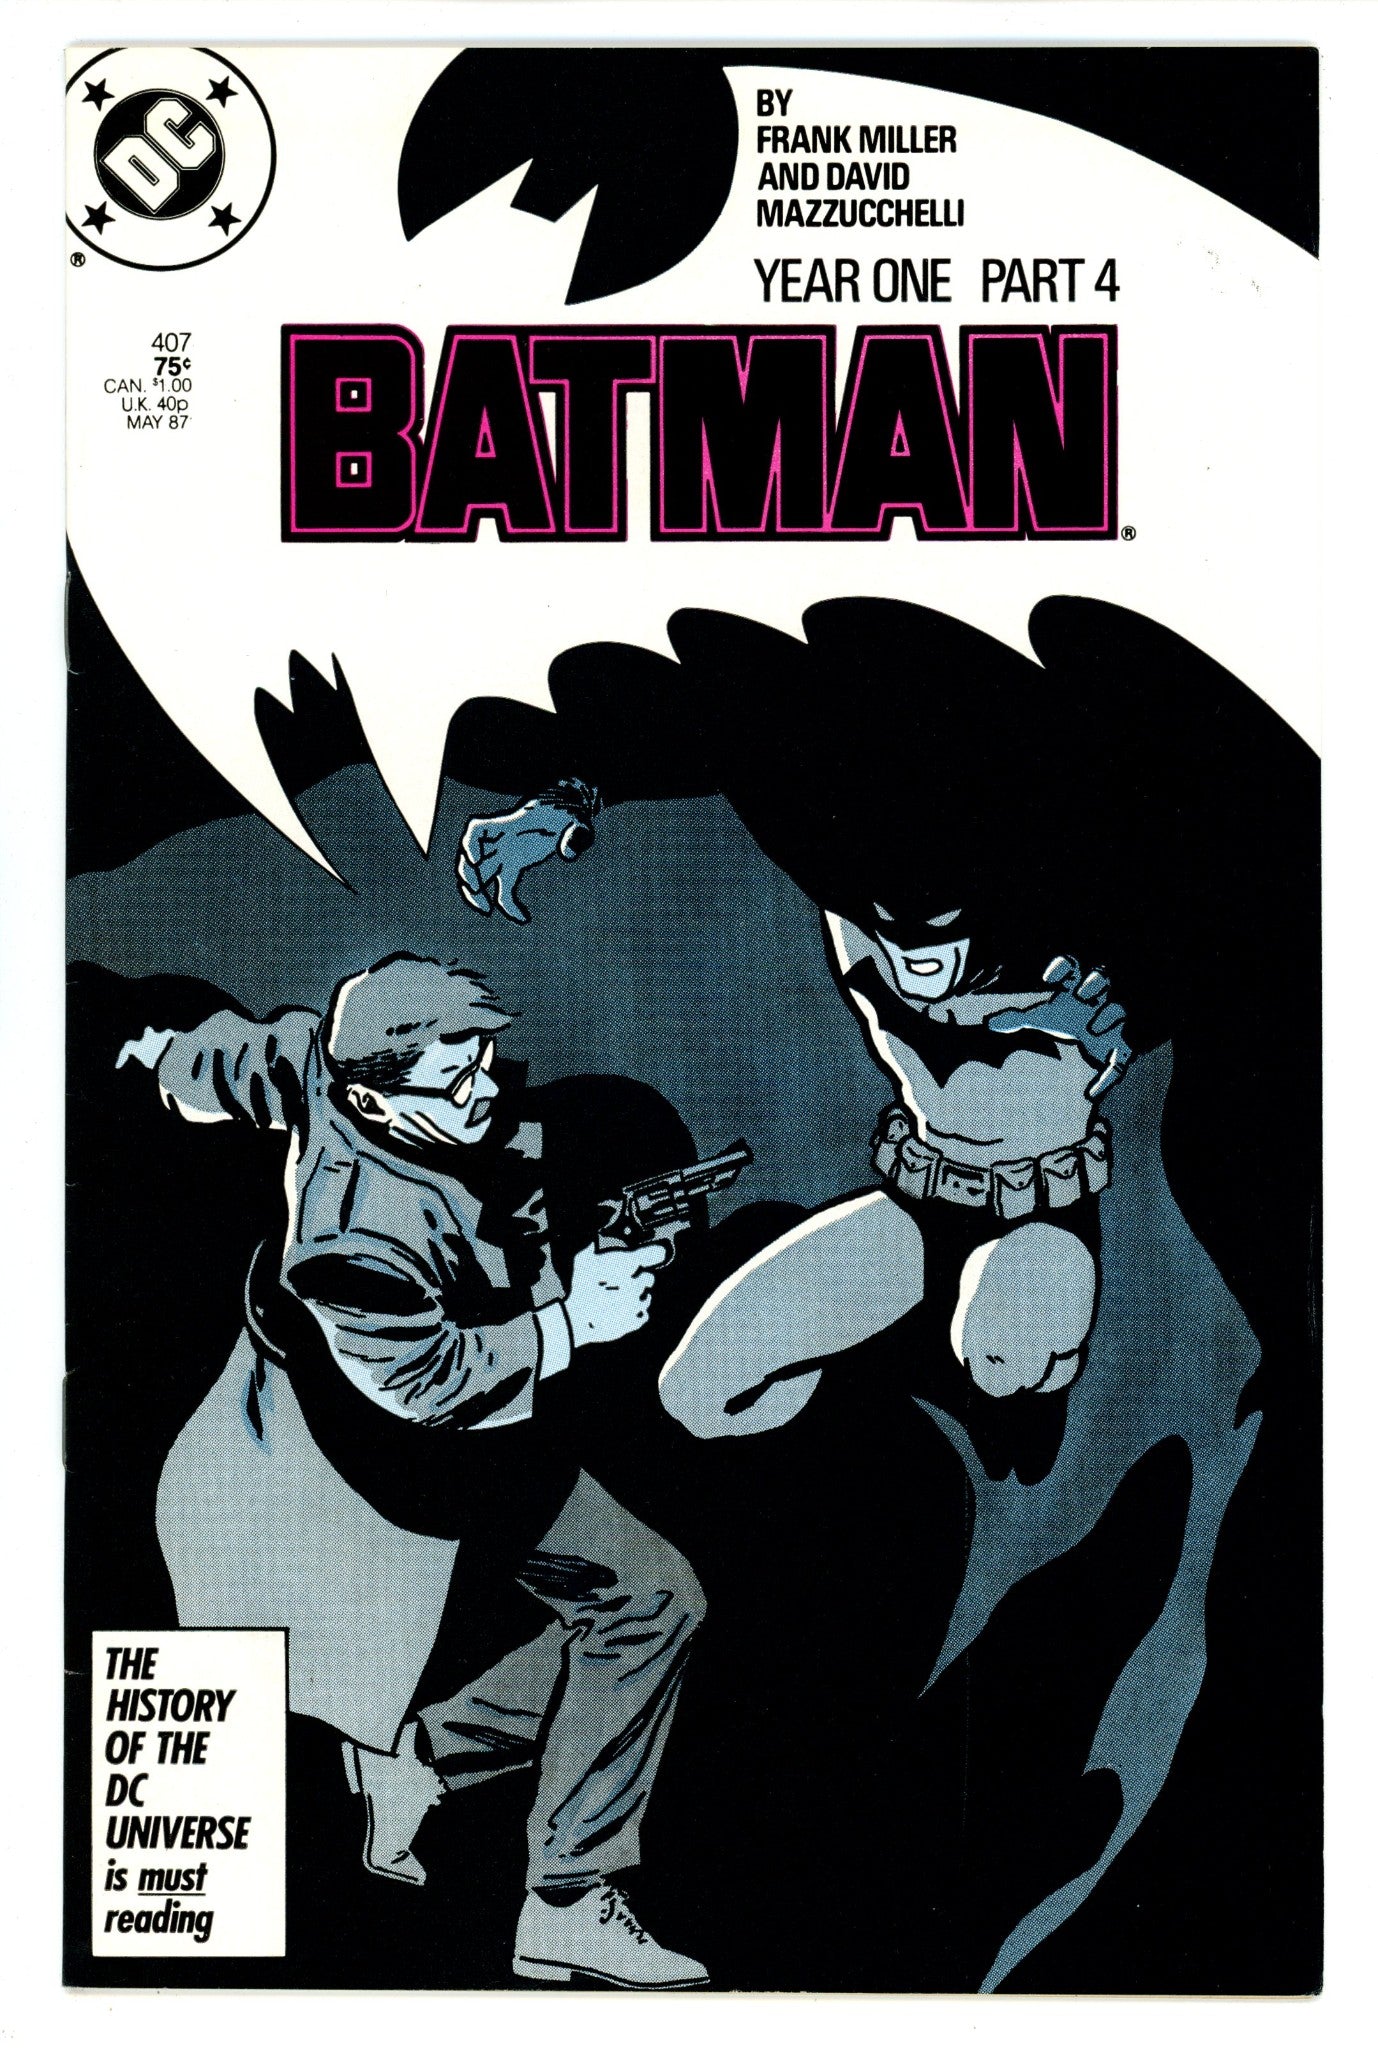 Batman Vol 1 407 VF (8.0) (1987) 